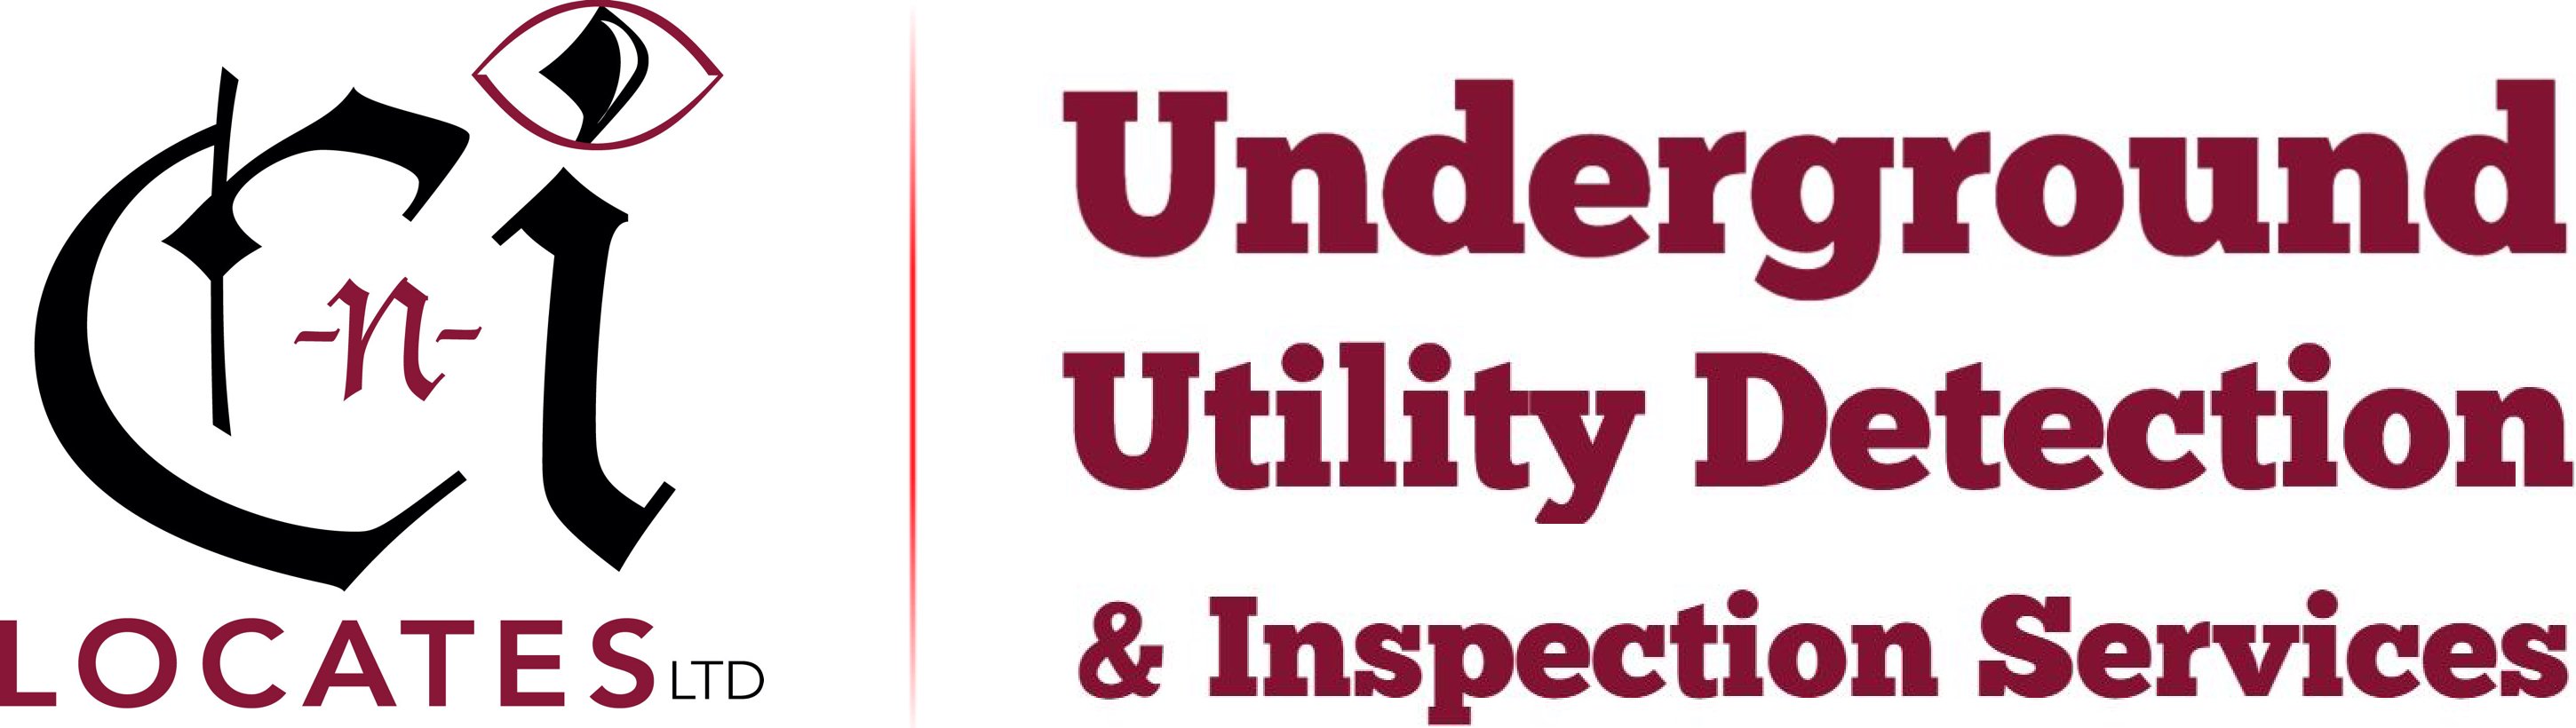 Detecting Underground Duct Banks | C-N-I Locates